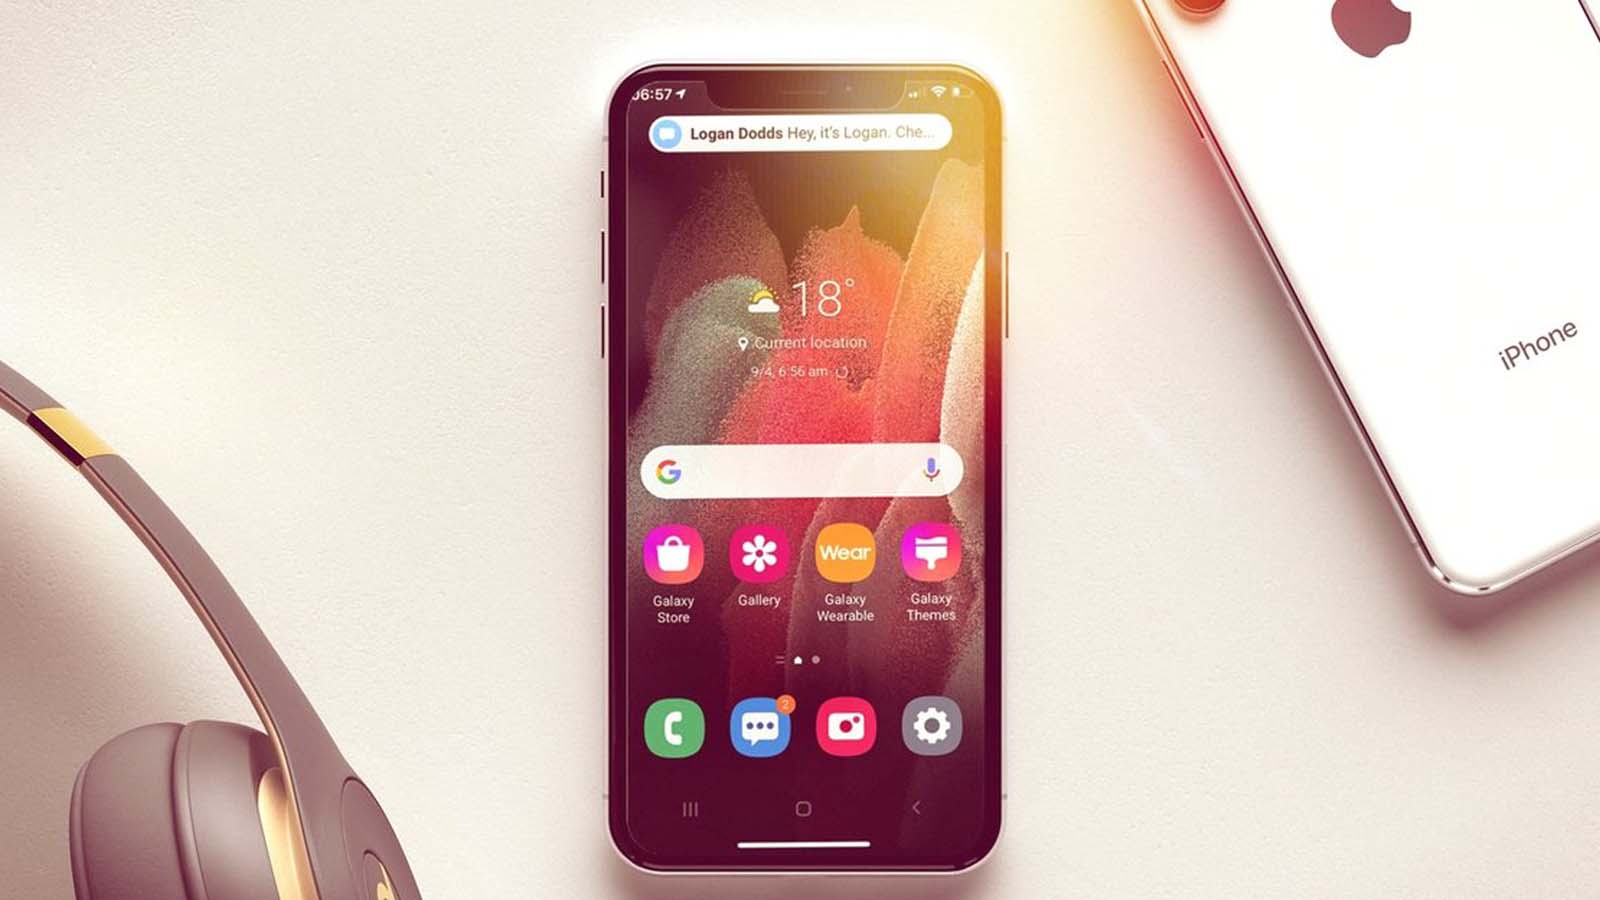 L'app Try Galaxy porta gli utenti iPhone a esplorare le potenzialità dell'intelligenza artificiale di Samsung